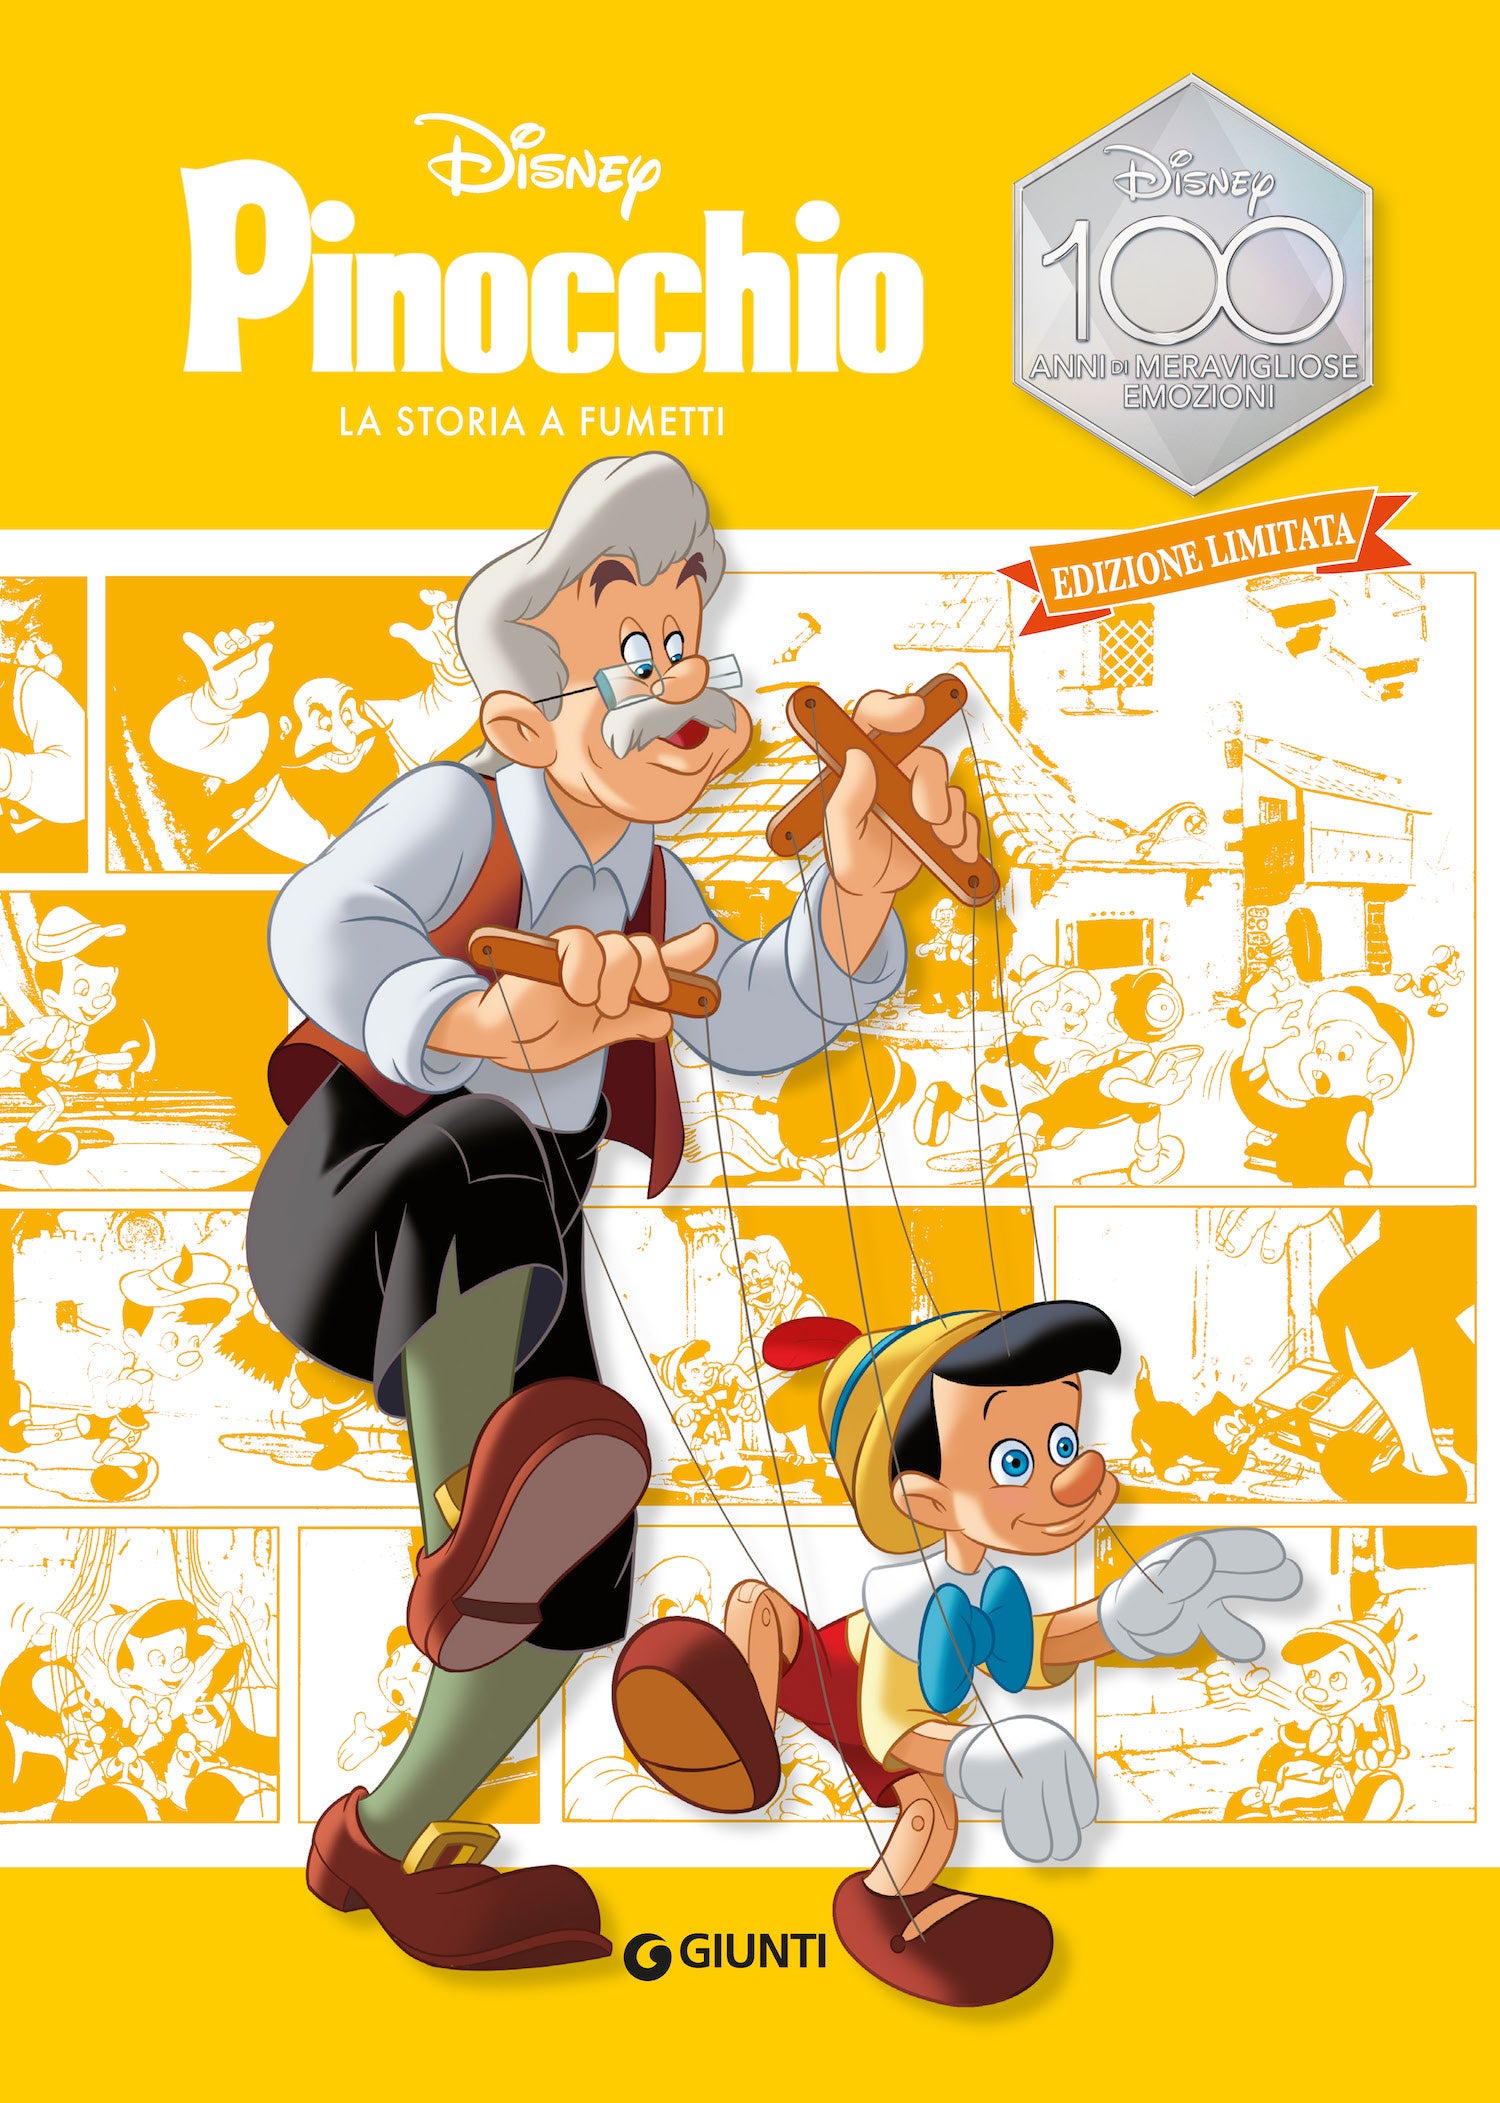 Pinocchio La storia a fumetti Edizione limitata. Disney 100 Anni di meravigliose emozioni